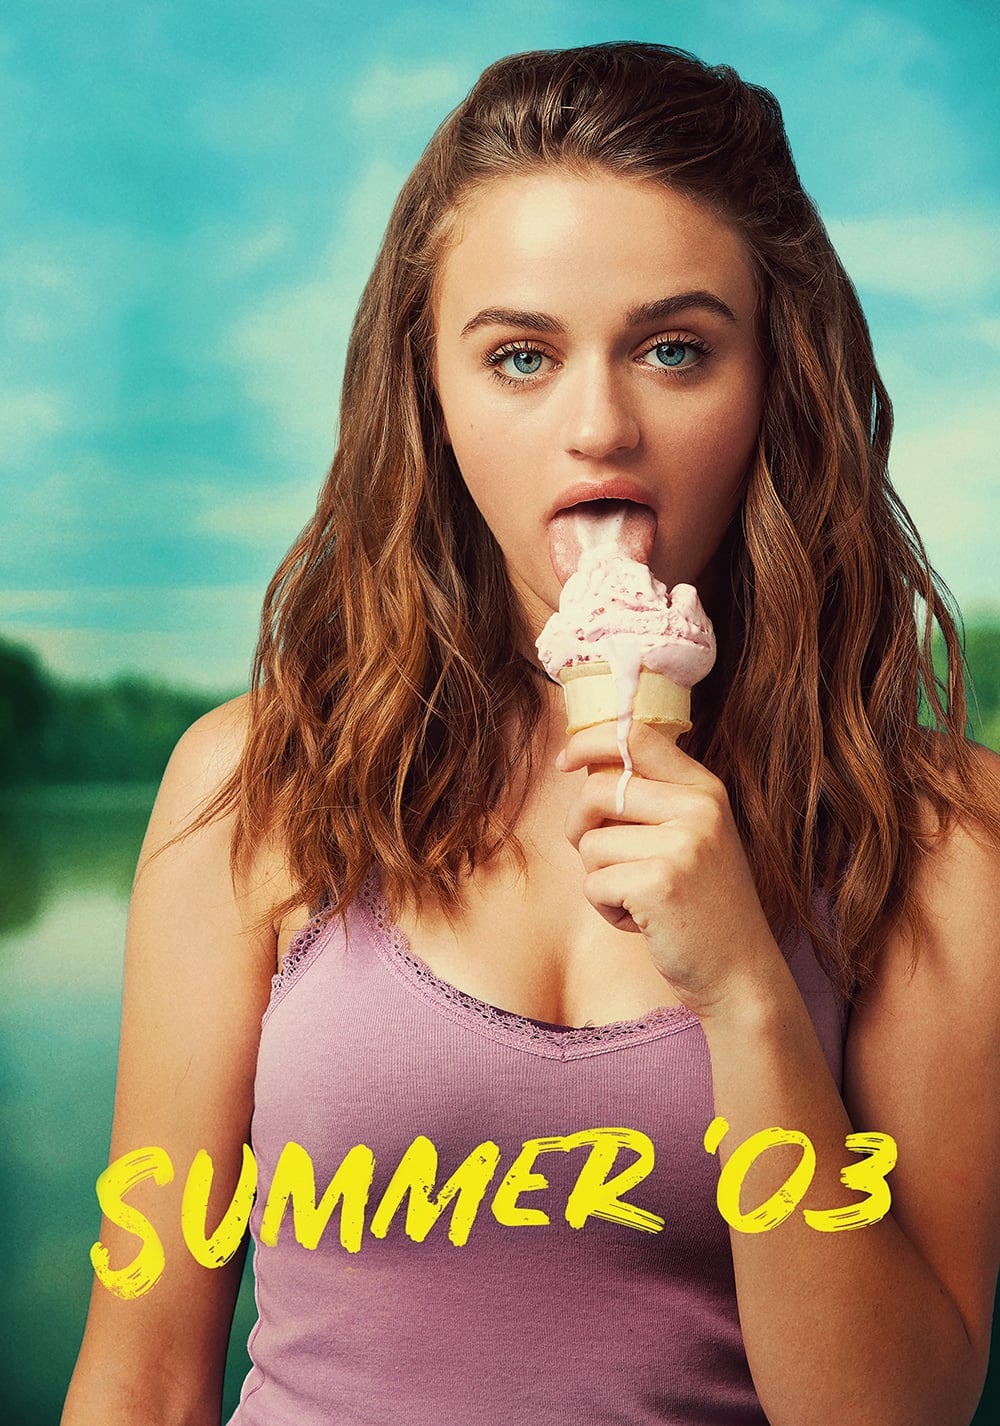 Summer '03 film